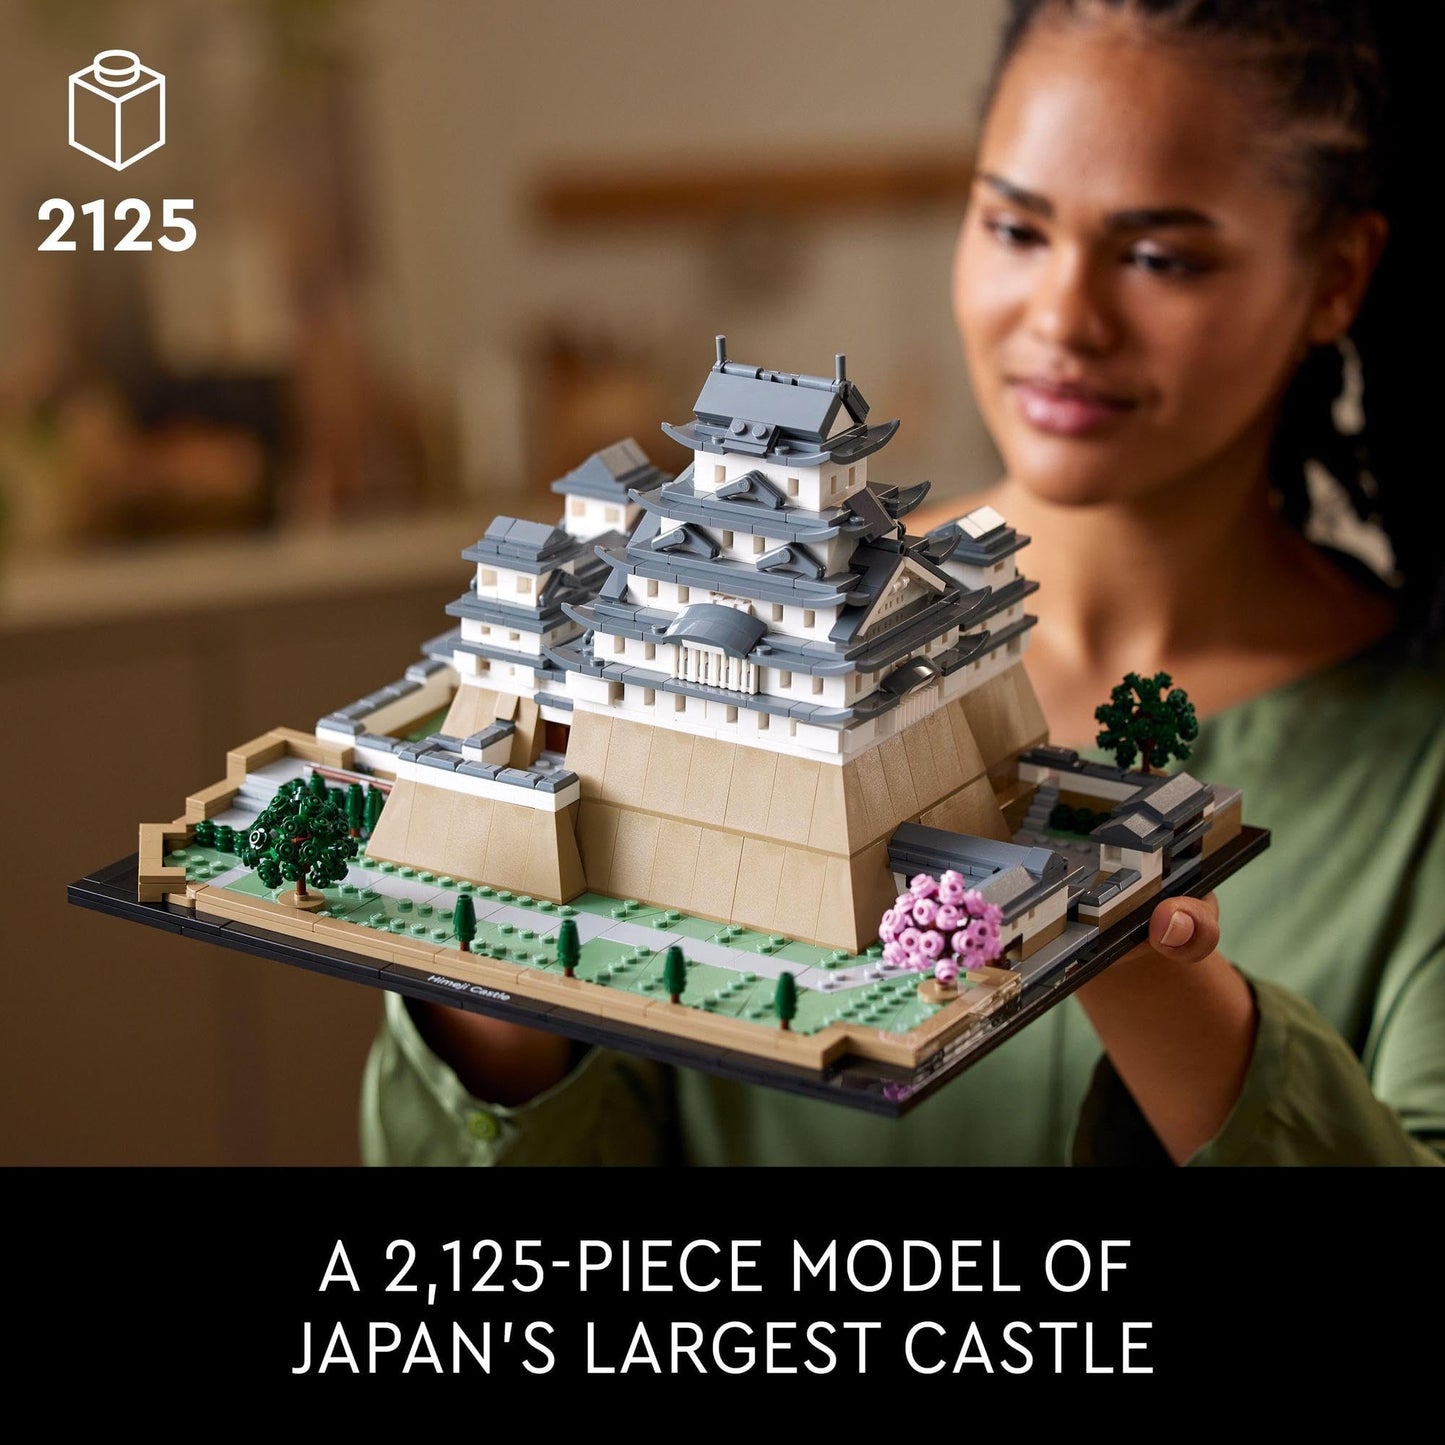 LEGO® Himeji Castle 21060